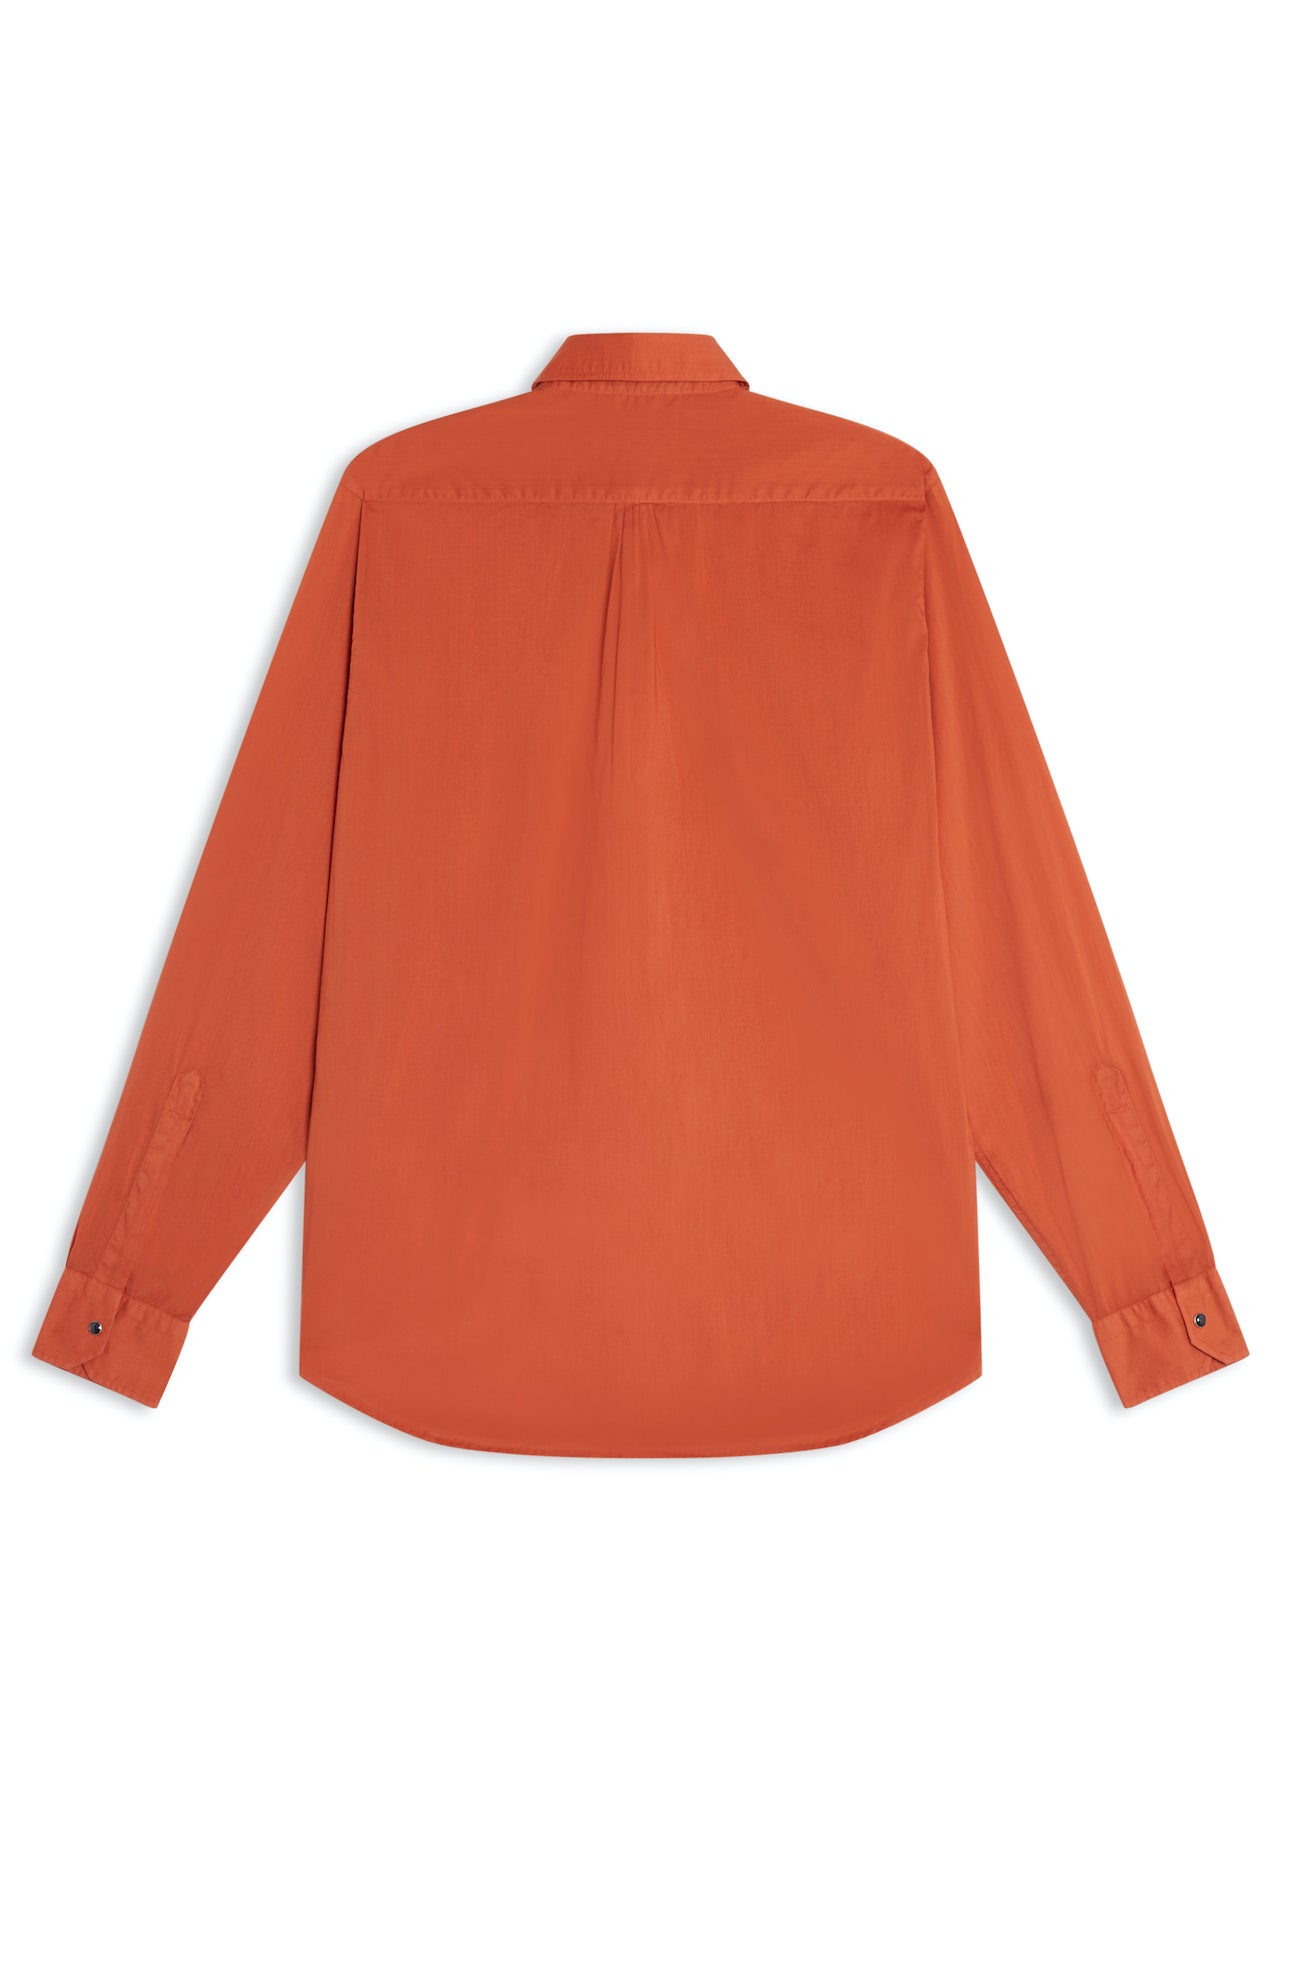 AD 74 - Tinta Shirt Orange